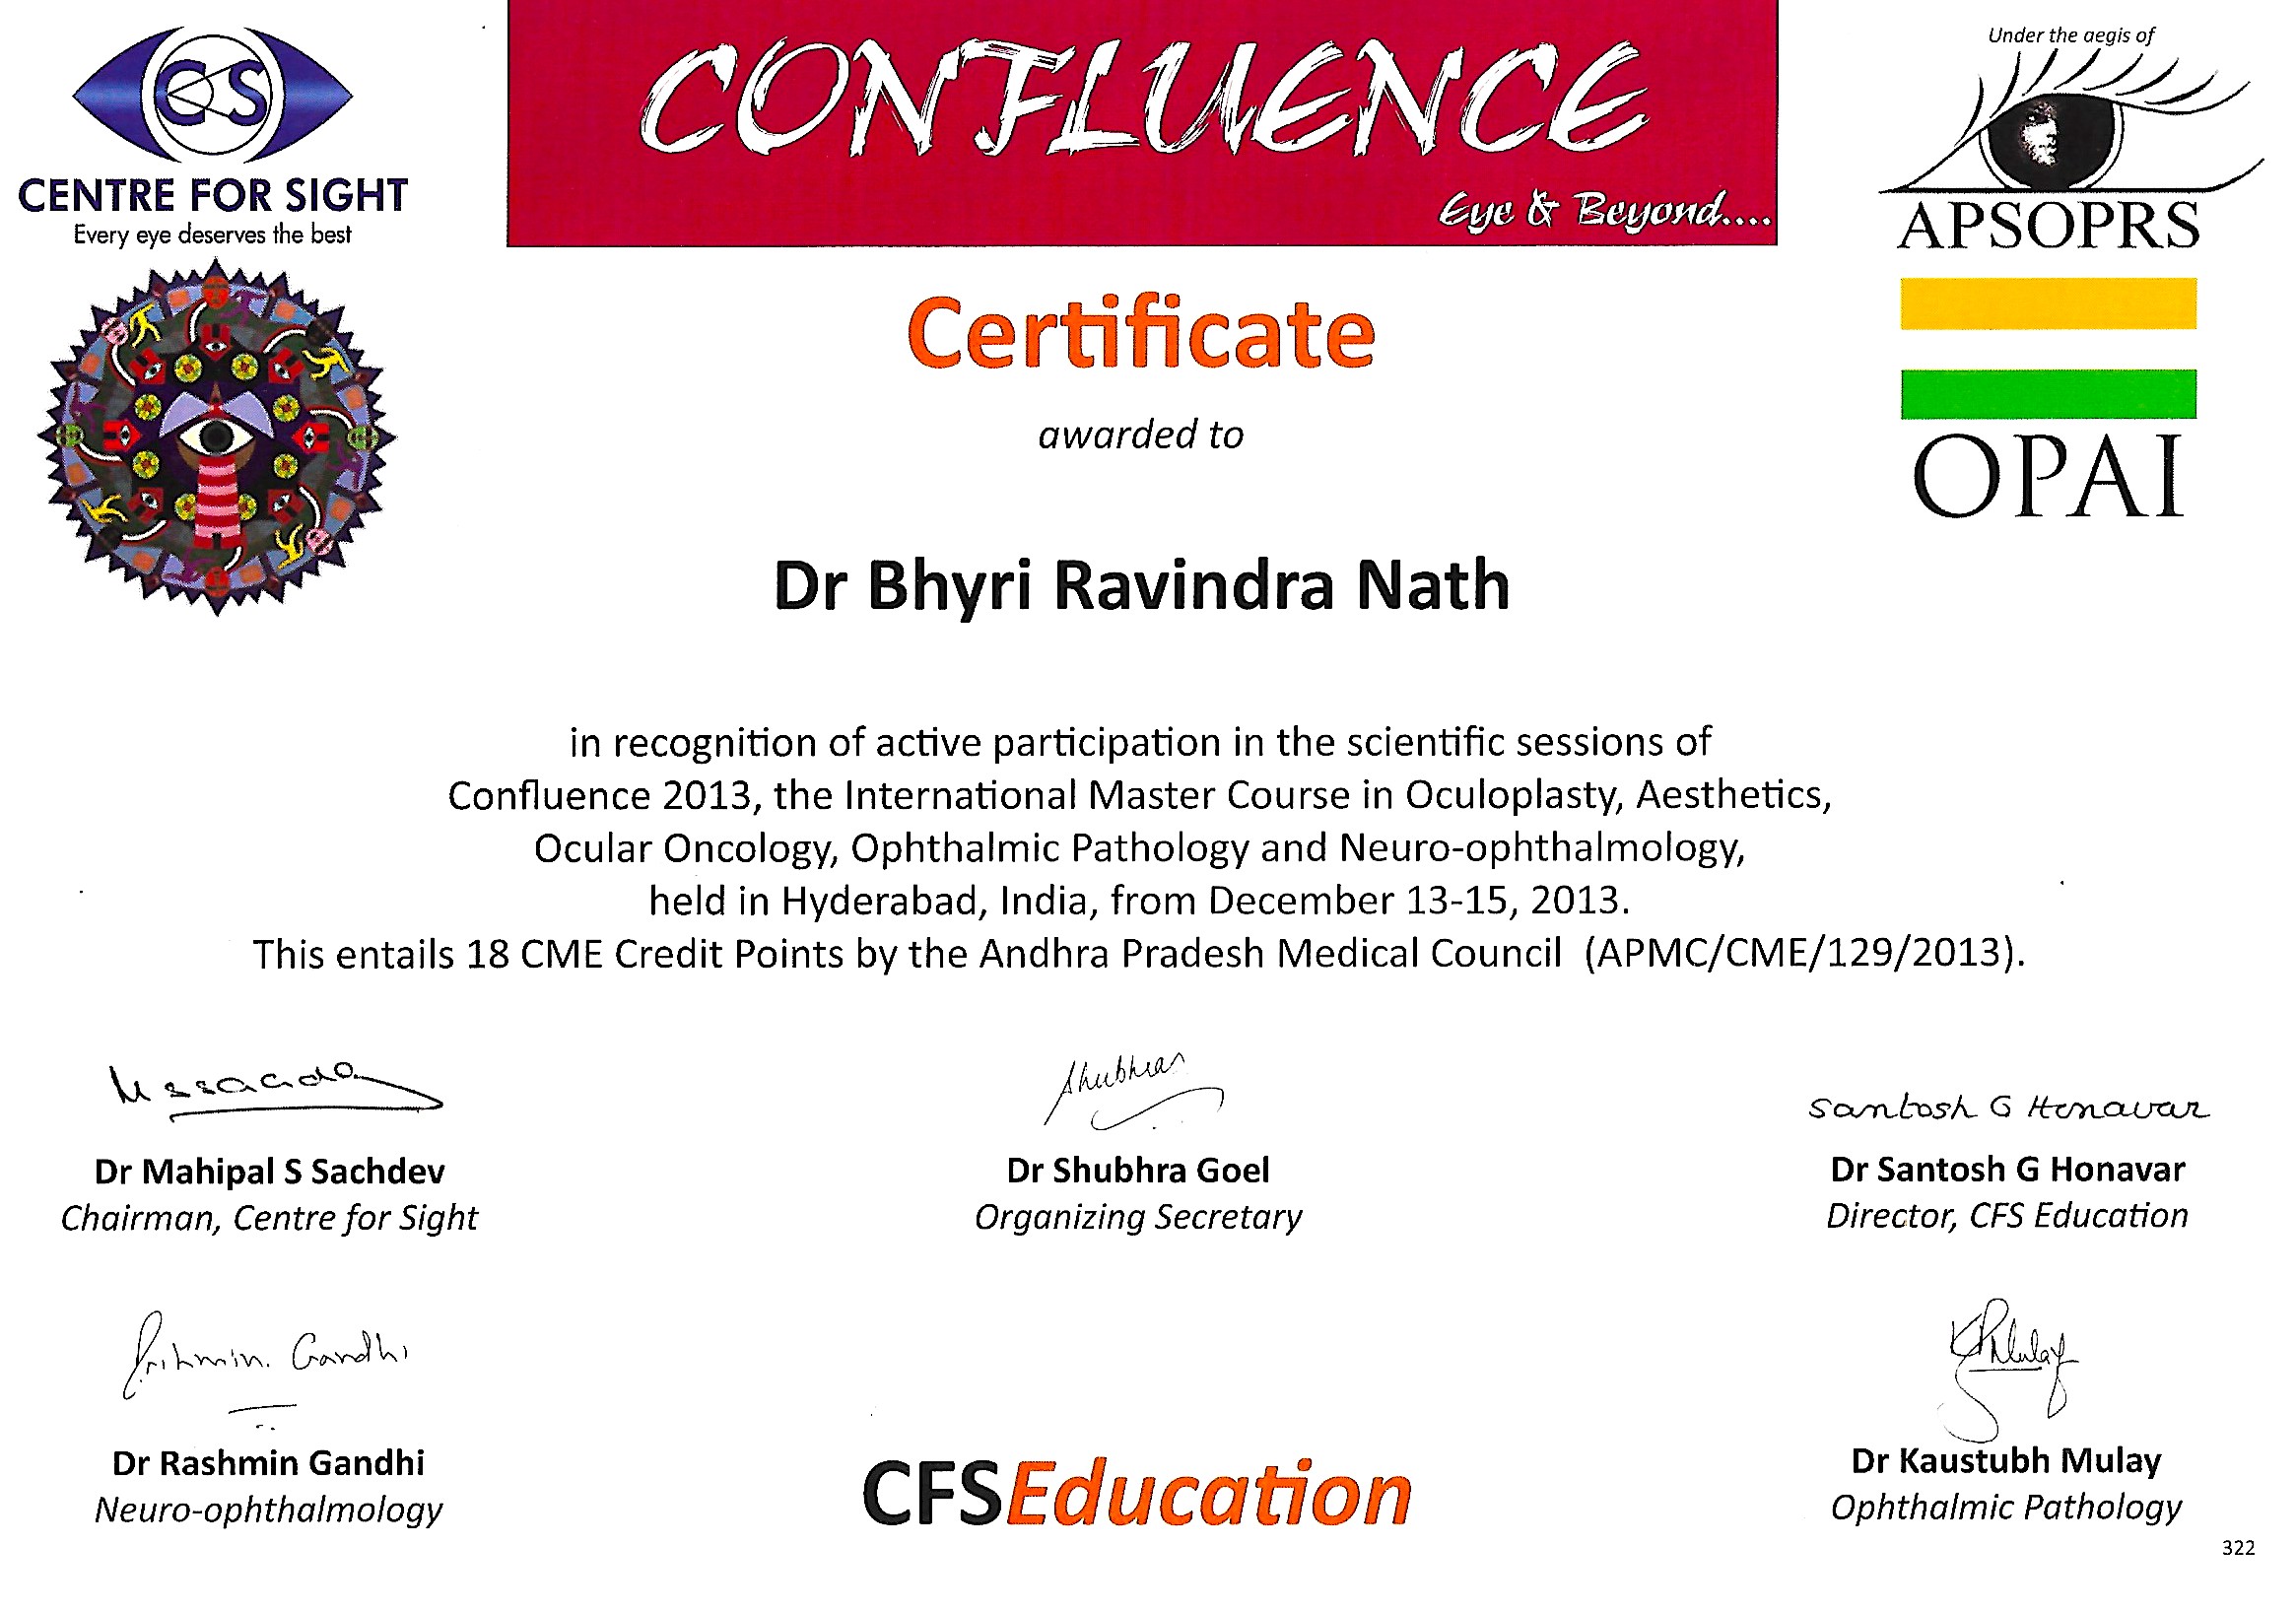 certificate11